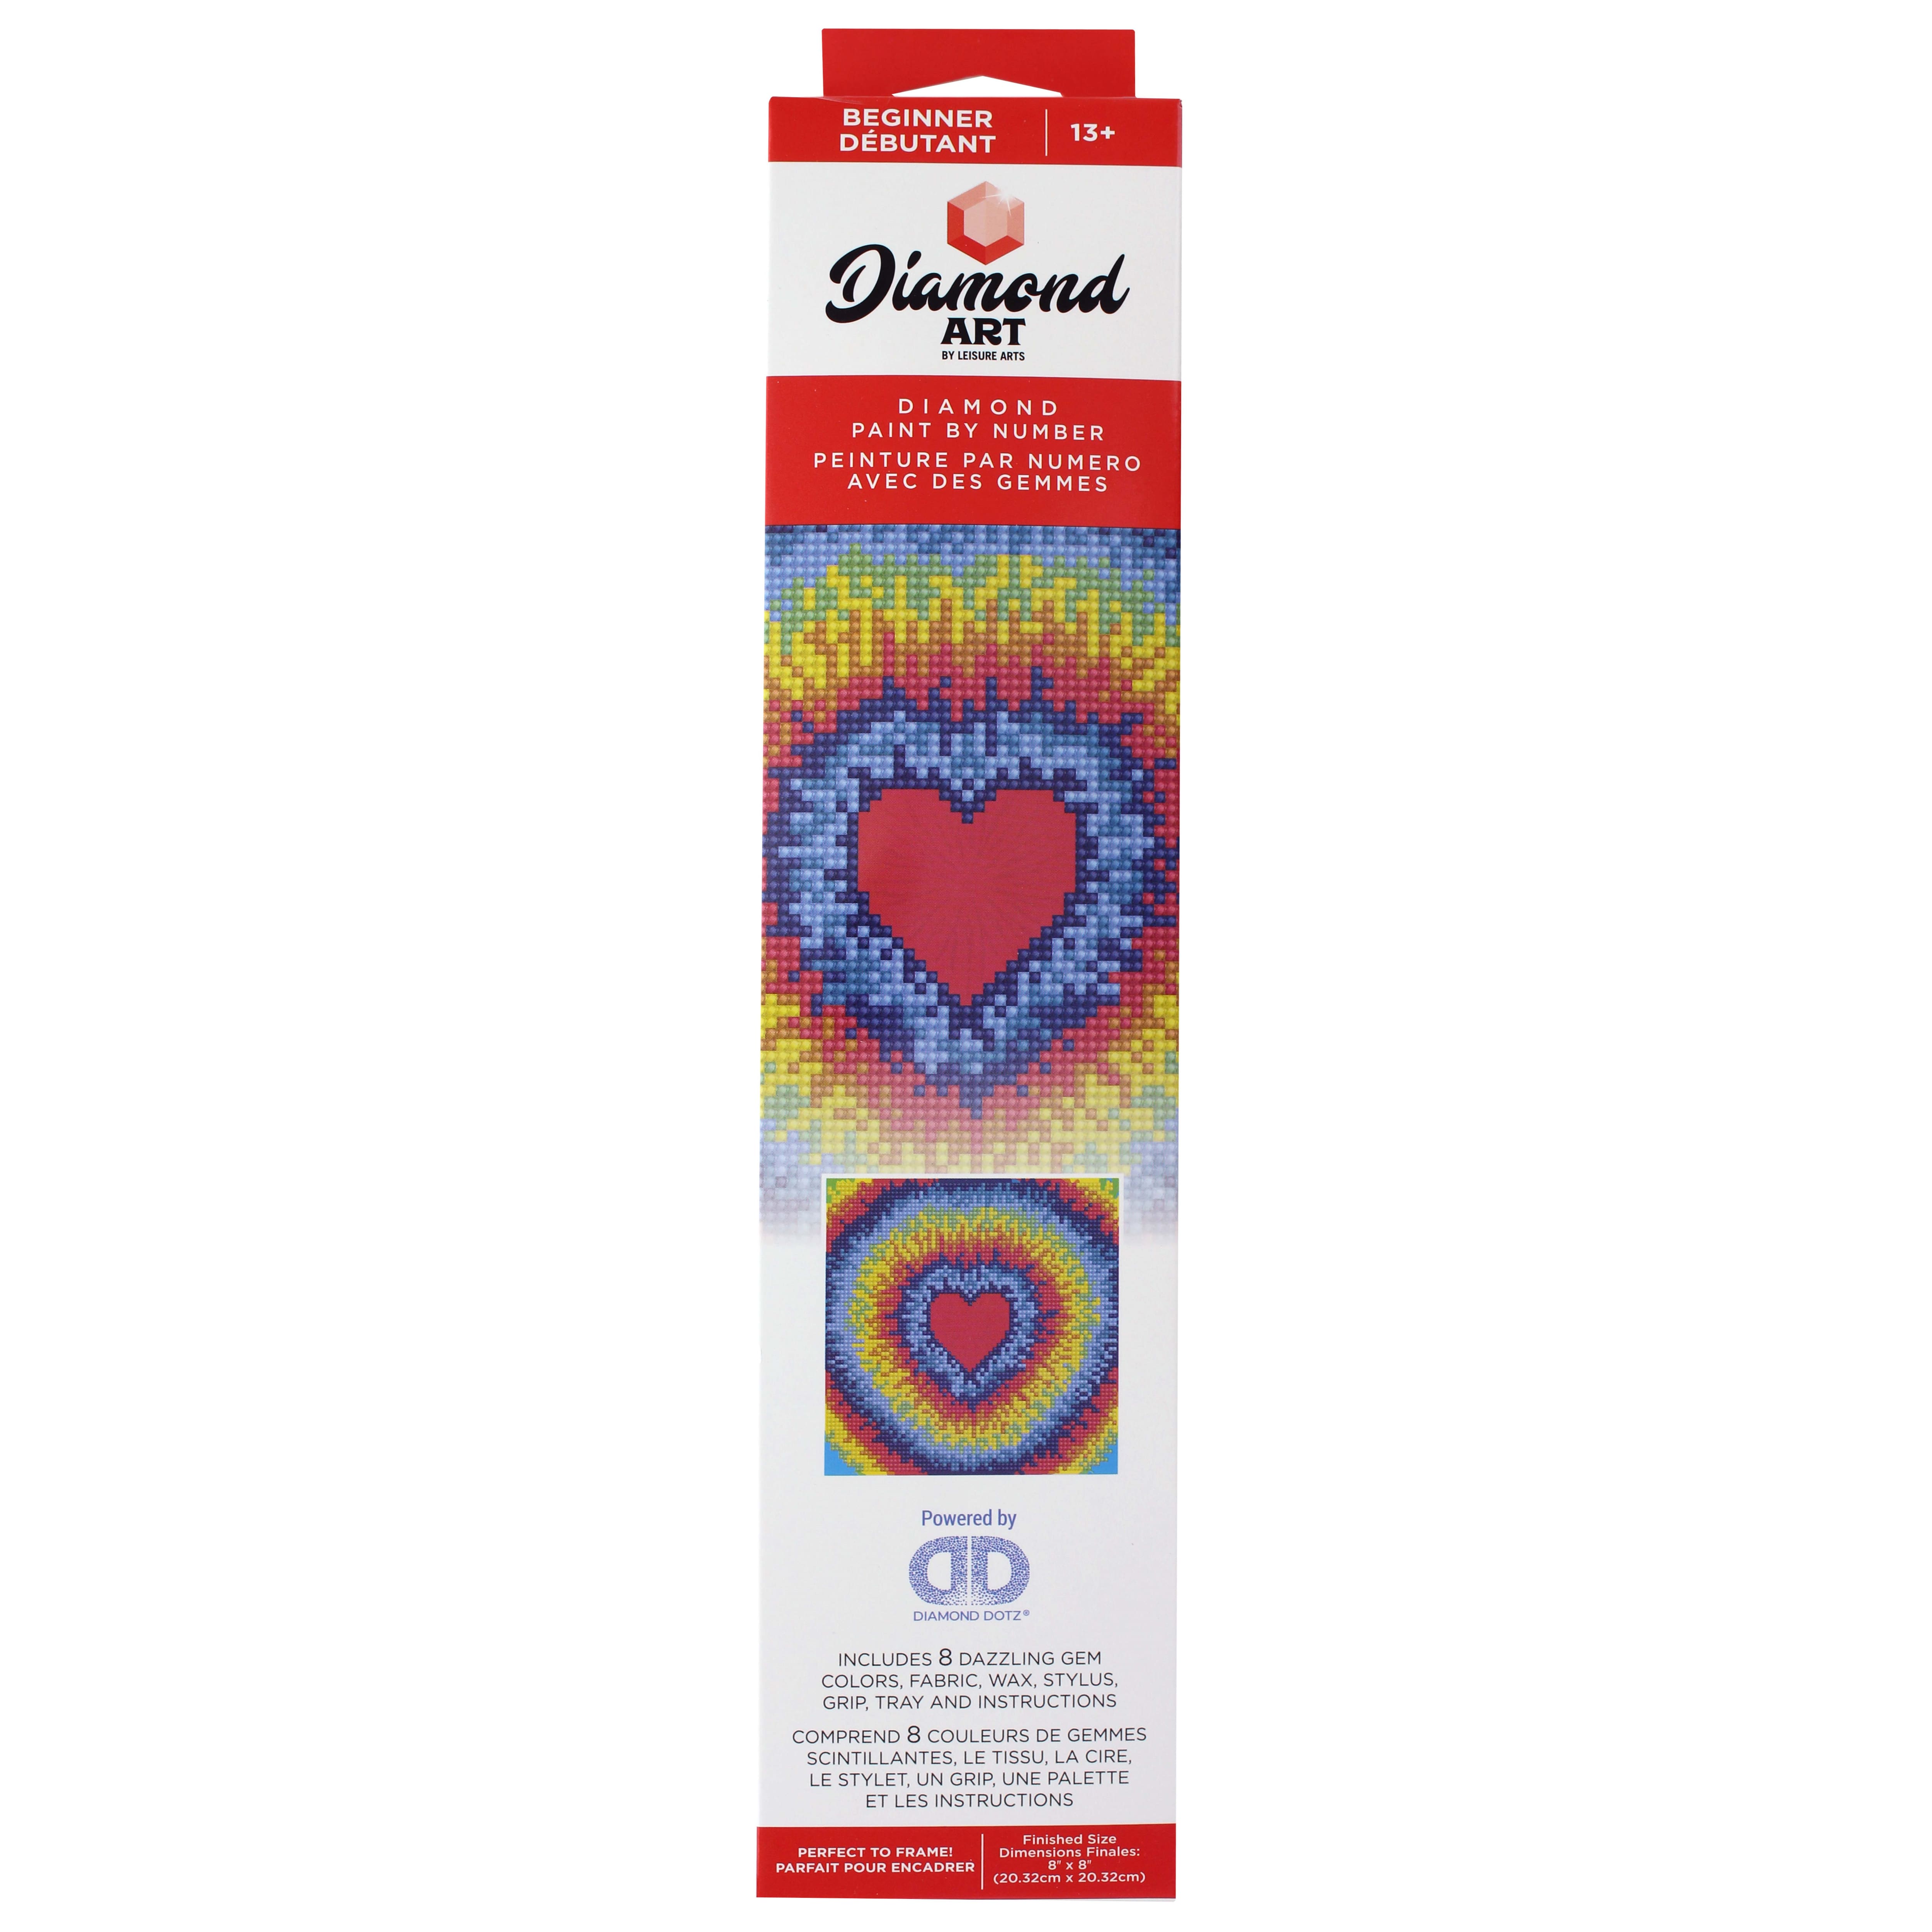 Rainbow Heart Diamond Art Kit by Make Market®